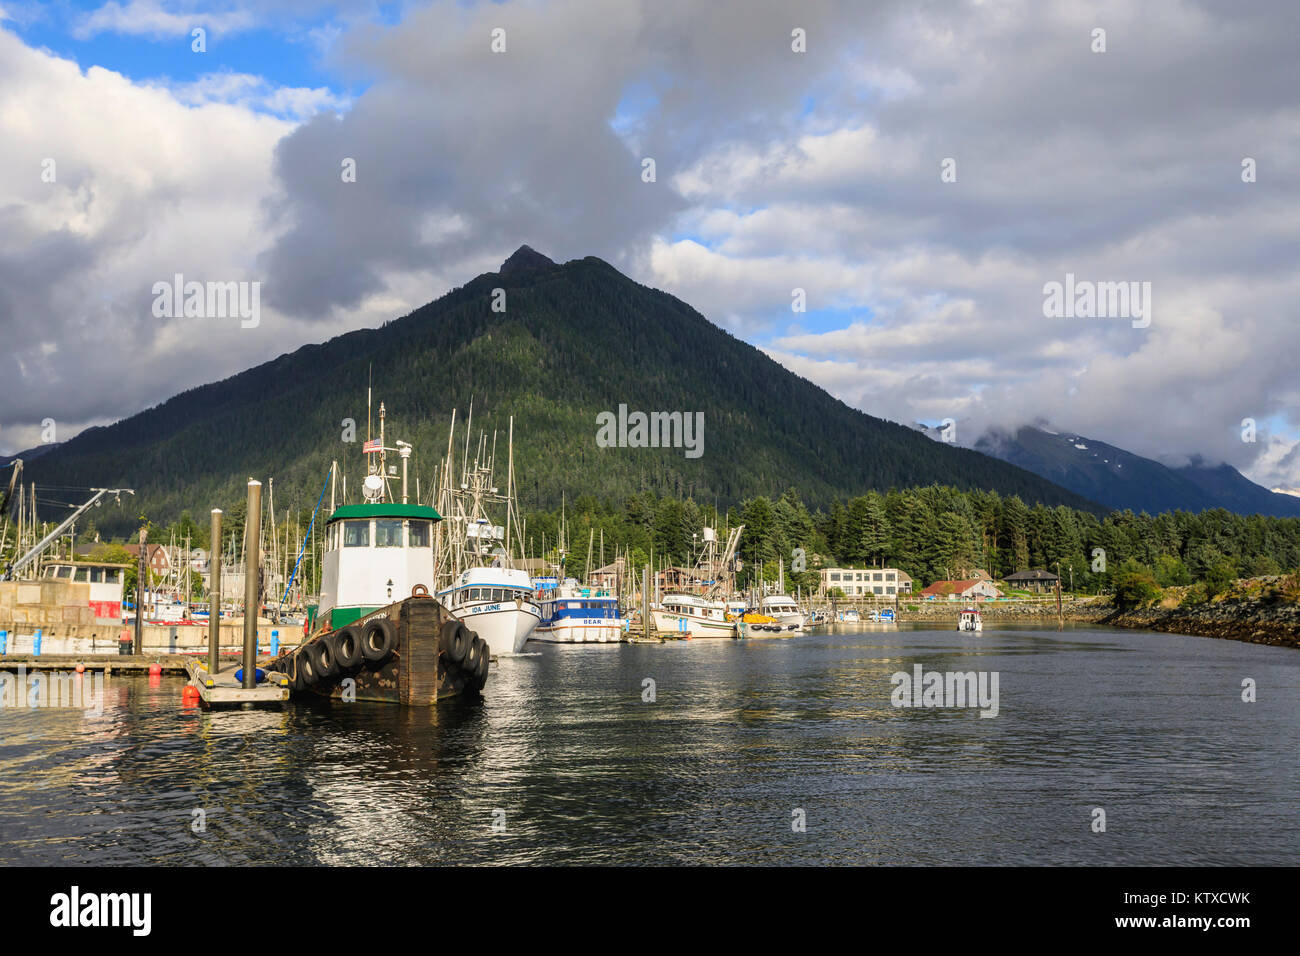 Crescent Boat Harbor con hermosas montañas boscosas y de la localidad de Sitka, raros días soleados, verano, Baranof Island, Alaska, Estados Unidos de América, ni Foto de stock